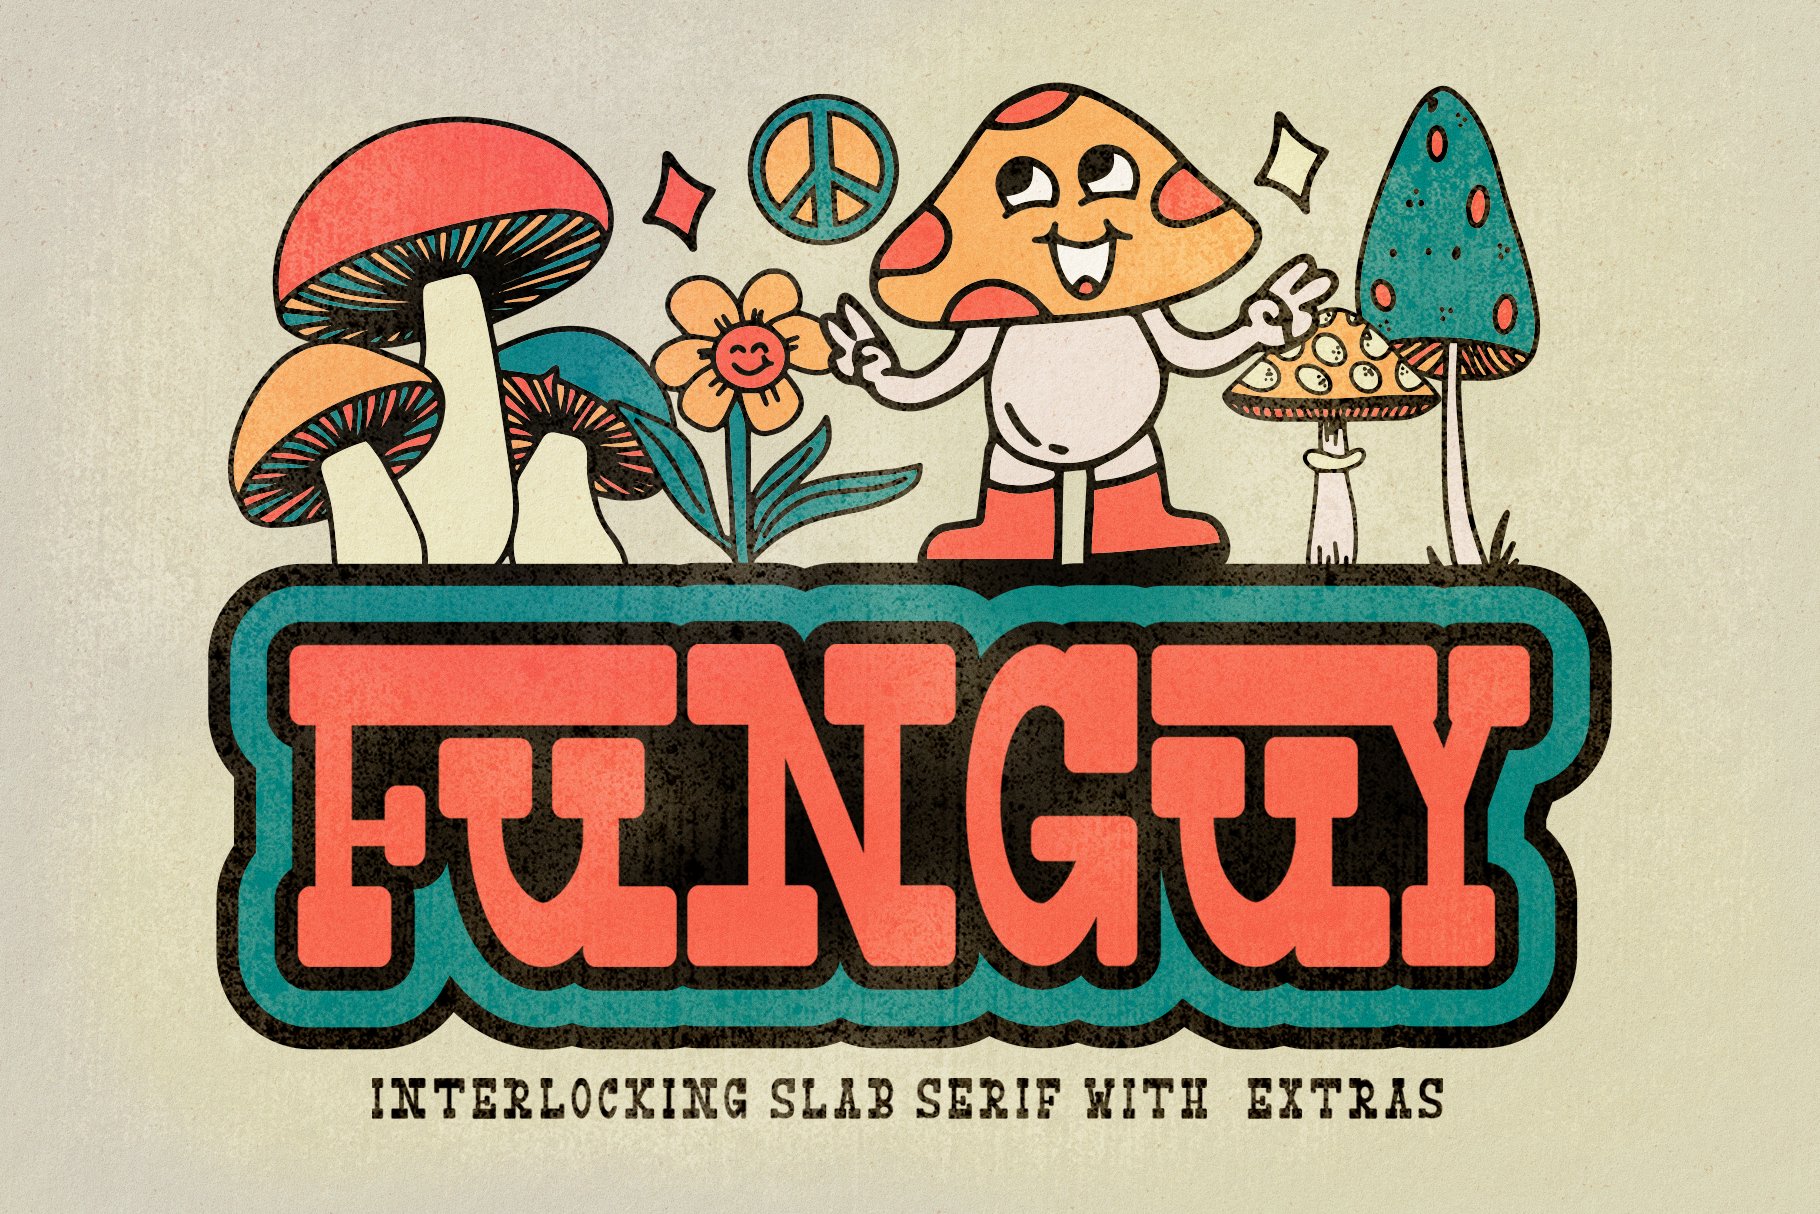 Funguy - Interlocked Slab Serif Font cover image.